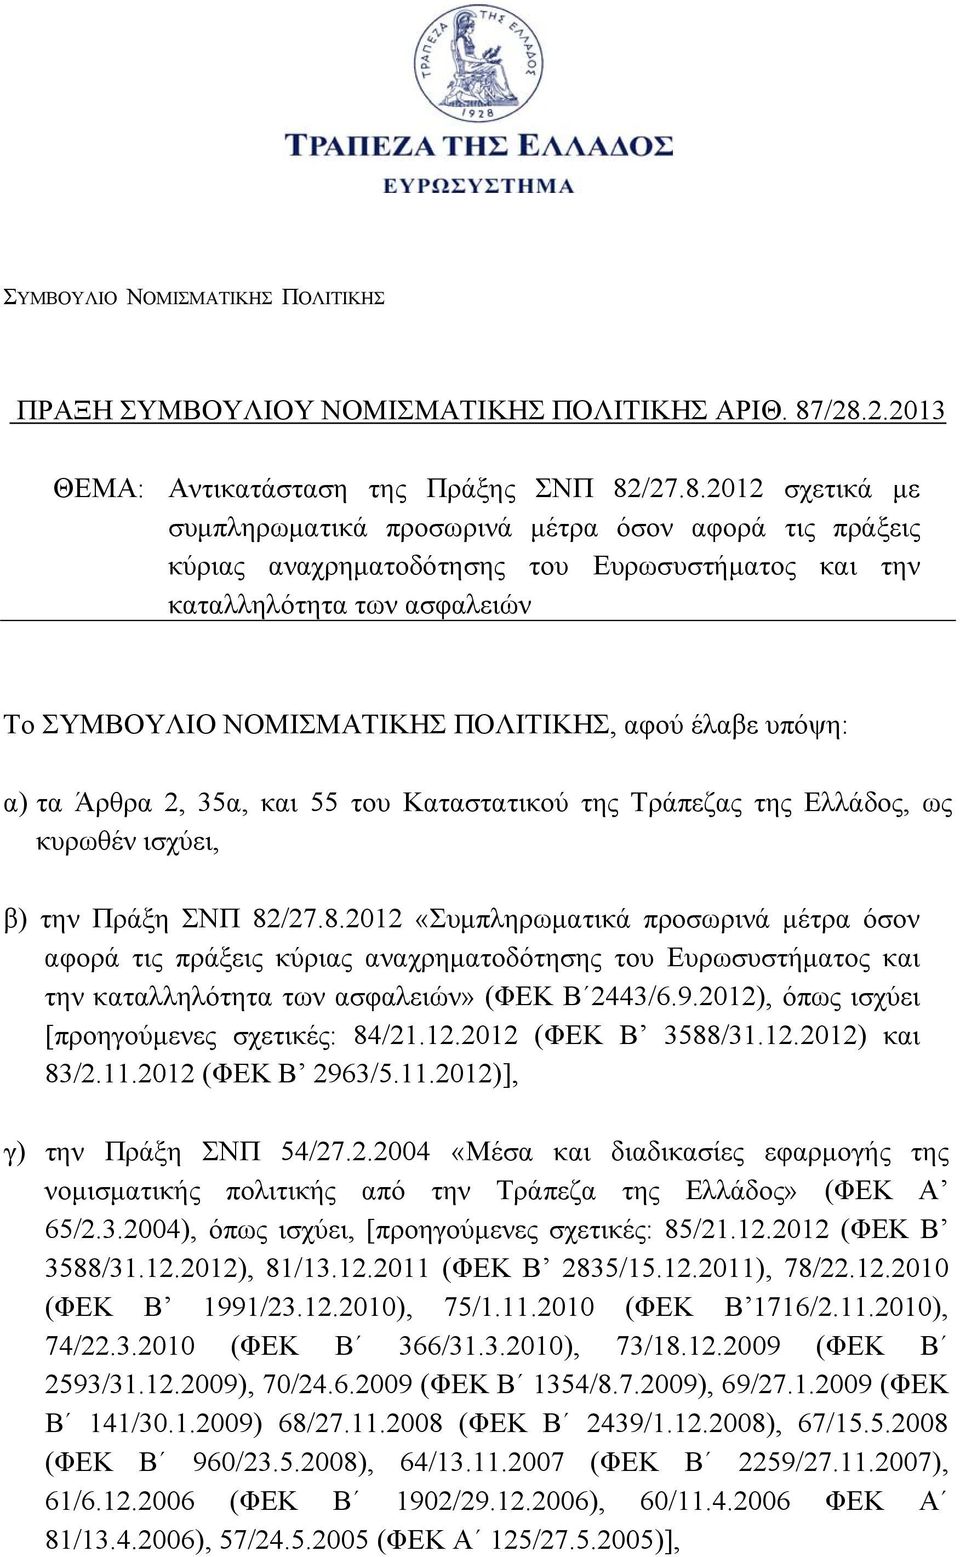 ασφαλειών Το ΣΥΜΒΟΥΛΙΟ ΝΟΜΙΣΜΑΤΙΚΗΣ ΠΟΛΙΤΙΚΗΣ, αφού έλαβε υπόψη: α) τα Άρθρα 2, 35α, και 55 του Καταστατικού της Τράπεζας της Ελλάδος, ως κυρωθέν ισχύει, β) την Πράξη ΣΝΠ 82